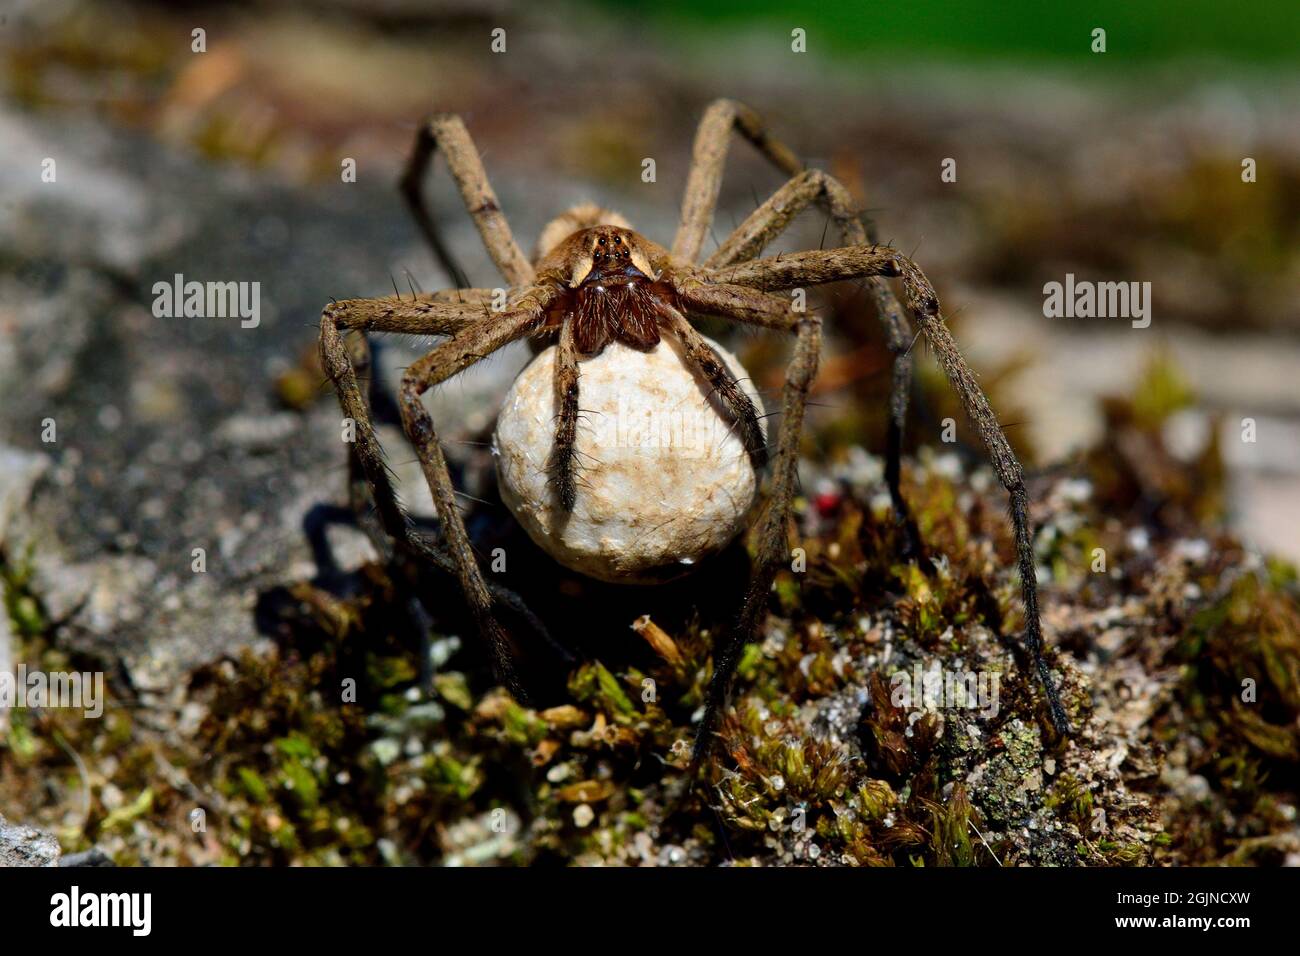 Listspinne, Raubspinne, nursery web spider, Pisaura mirabilis, Spinne des  Jahres 2002, mit Ei-Kokon, with egg-cocoon Stock Photo - Alamy